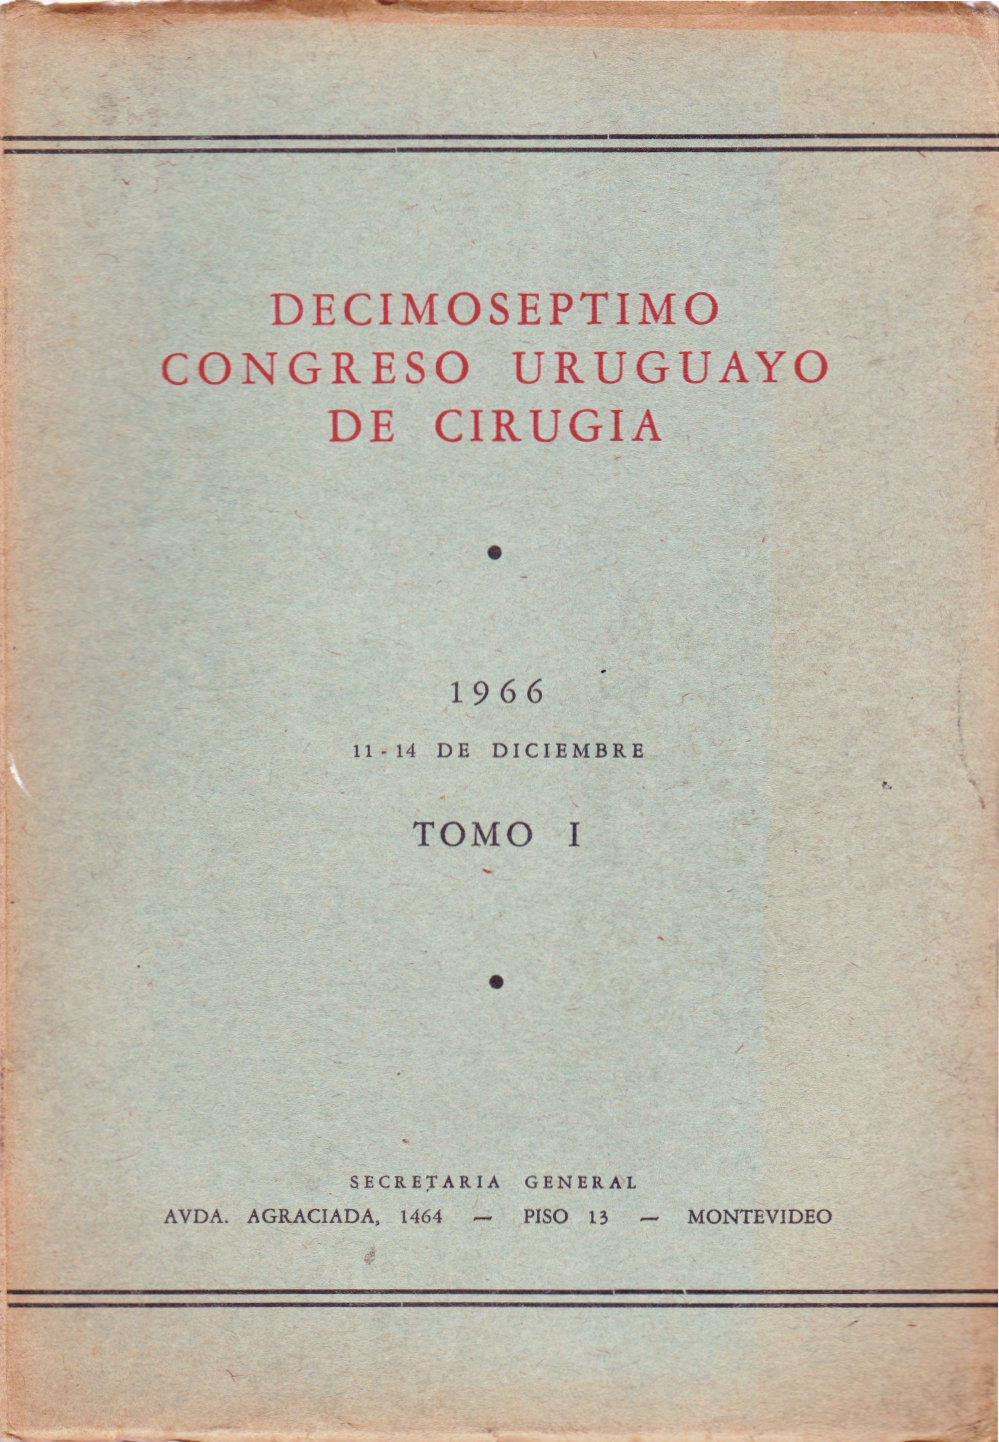 					View No. 1 (1966): Congresos Uruguayos de Cirugía
				